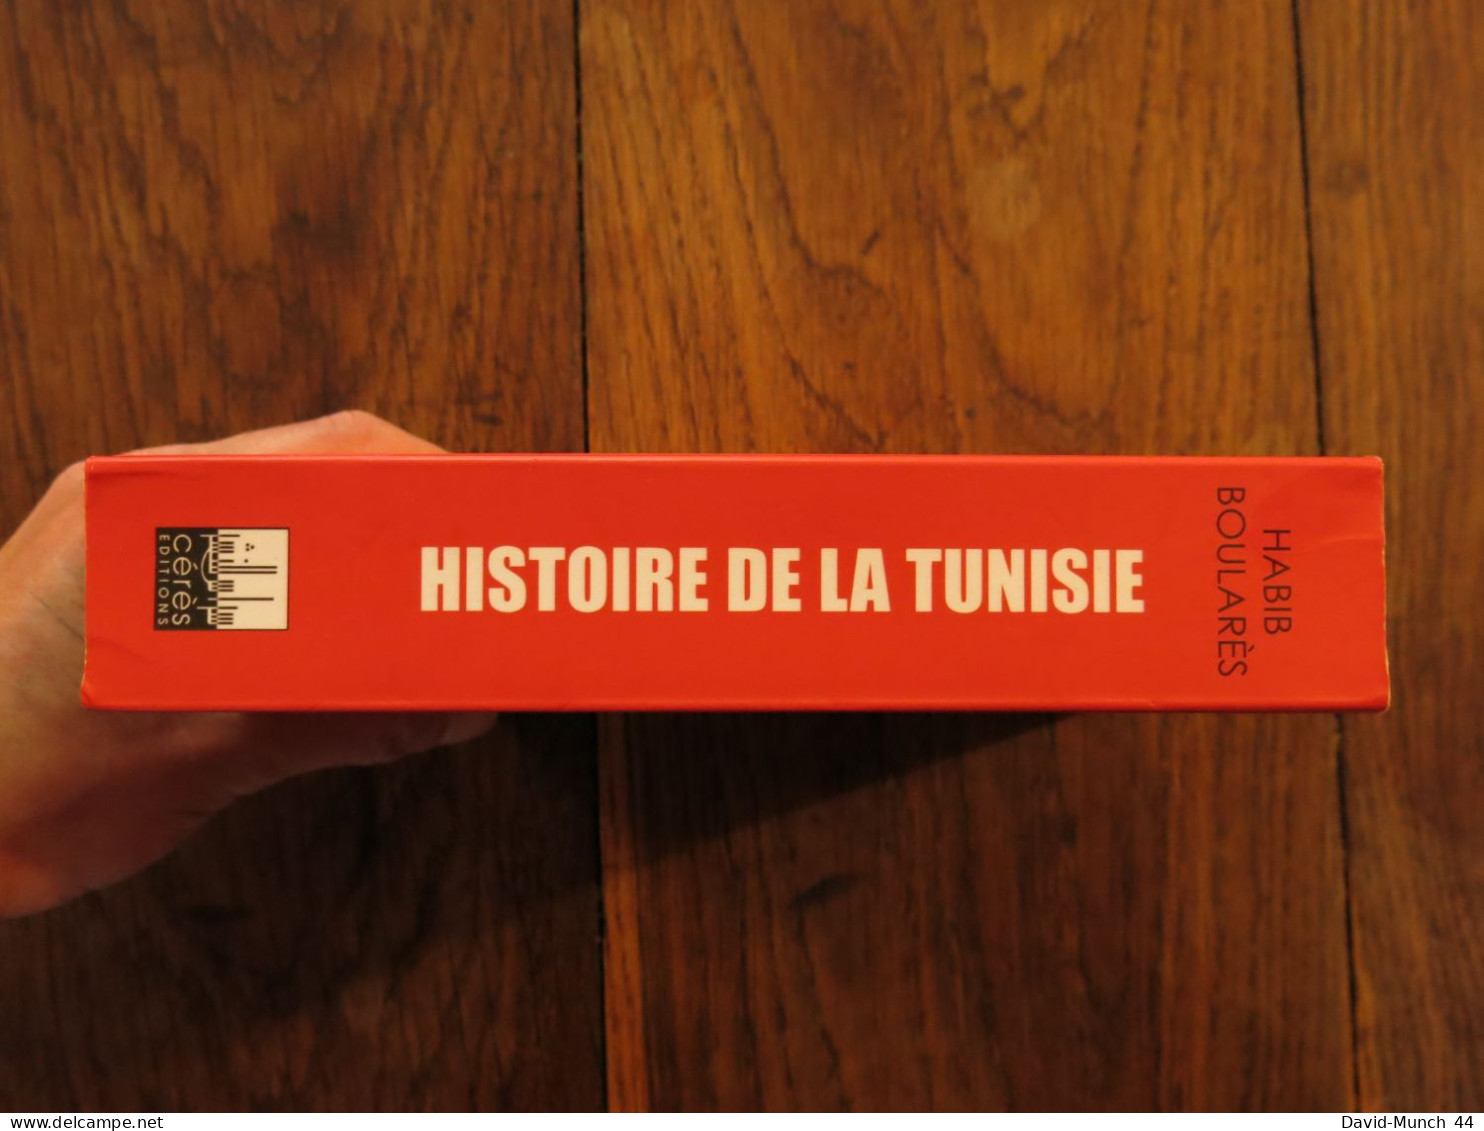 Histoire De La Tunisie: Les Grandes Dates De La Préhistoire à La Révolution De Habib Boularès. Cérès éditions. 2013 - History